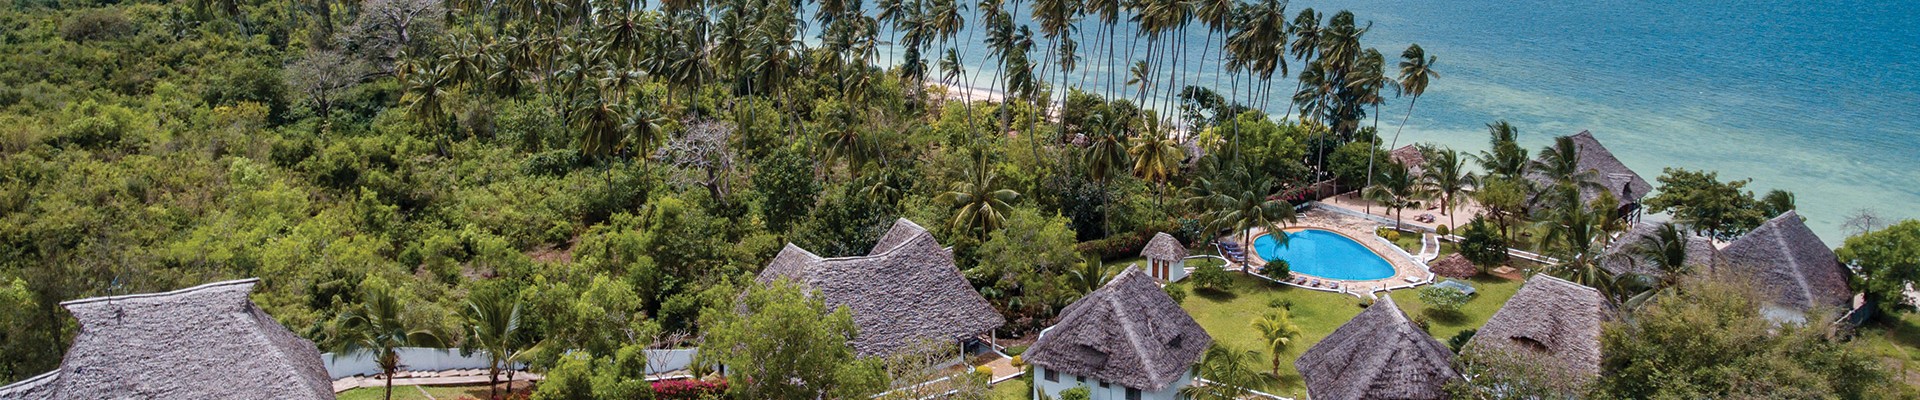 3* Filao Beach Resort and Spa - Zanzibar Package (7 Nights)